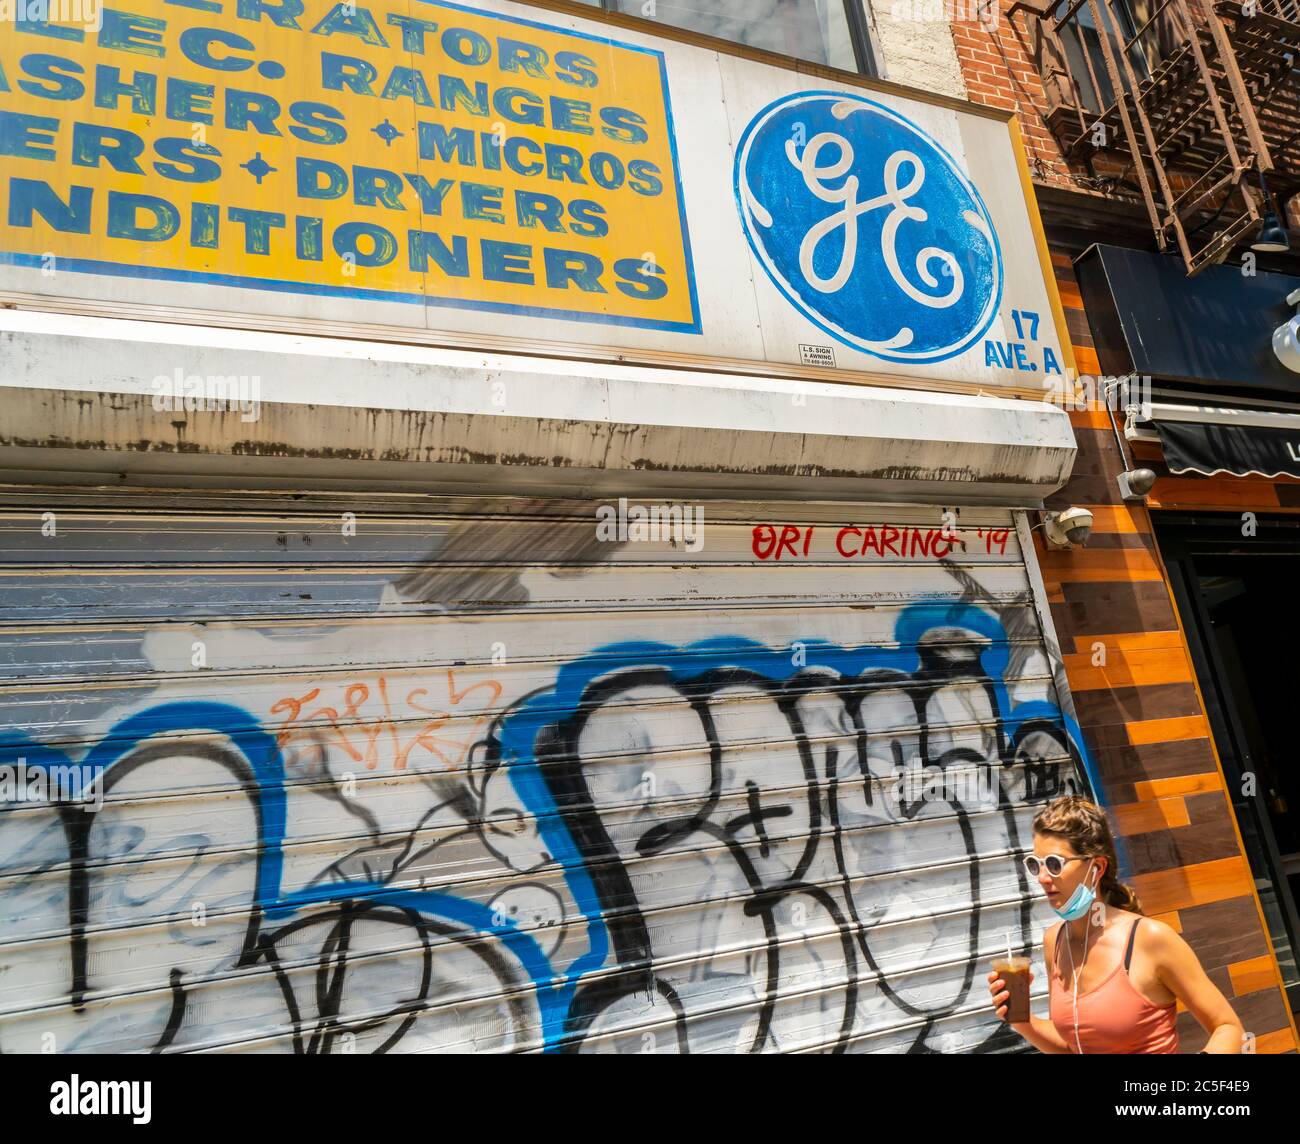 El logotipo de General Electric “GE” aparece en un cartel de privilegio en  una tienda de electrodomésticos en el barrio de East Village de Nueva York  el sábado, 30 de mayo de